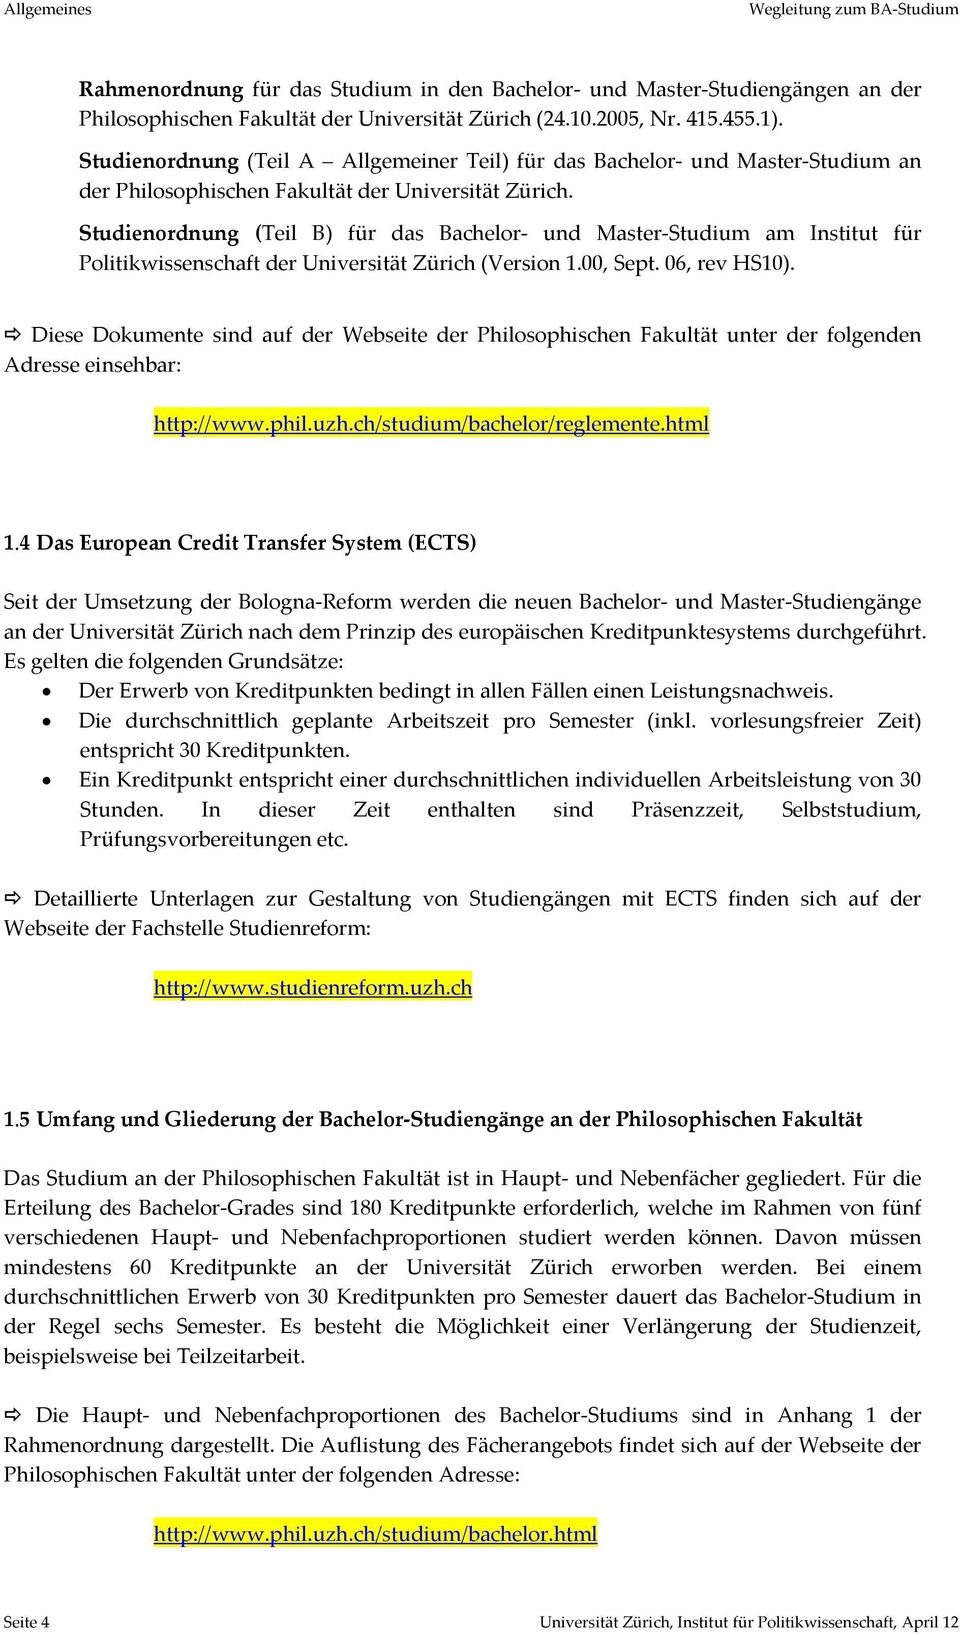 Studienordnung (Teil B) für das Bachelor und Master Studium am Institut für Politikwissenschaft der Universität Zürich (Version 1.00, Sept. 06, rev HS10).